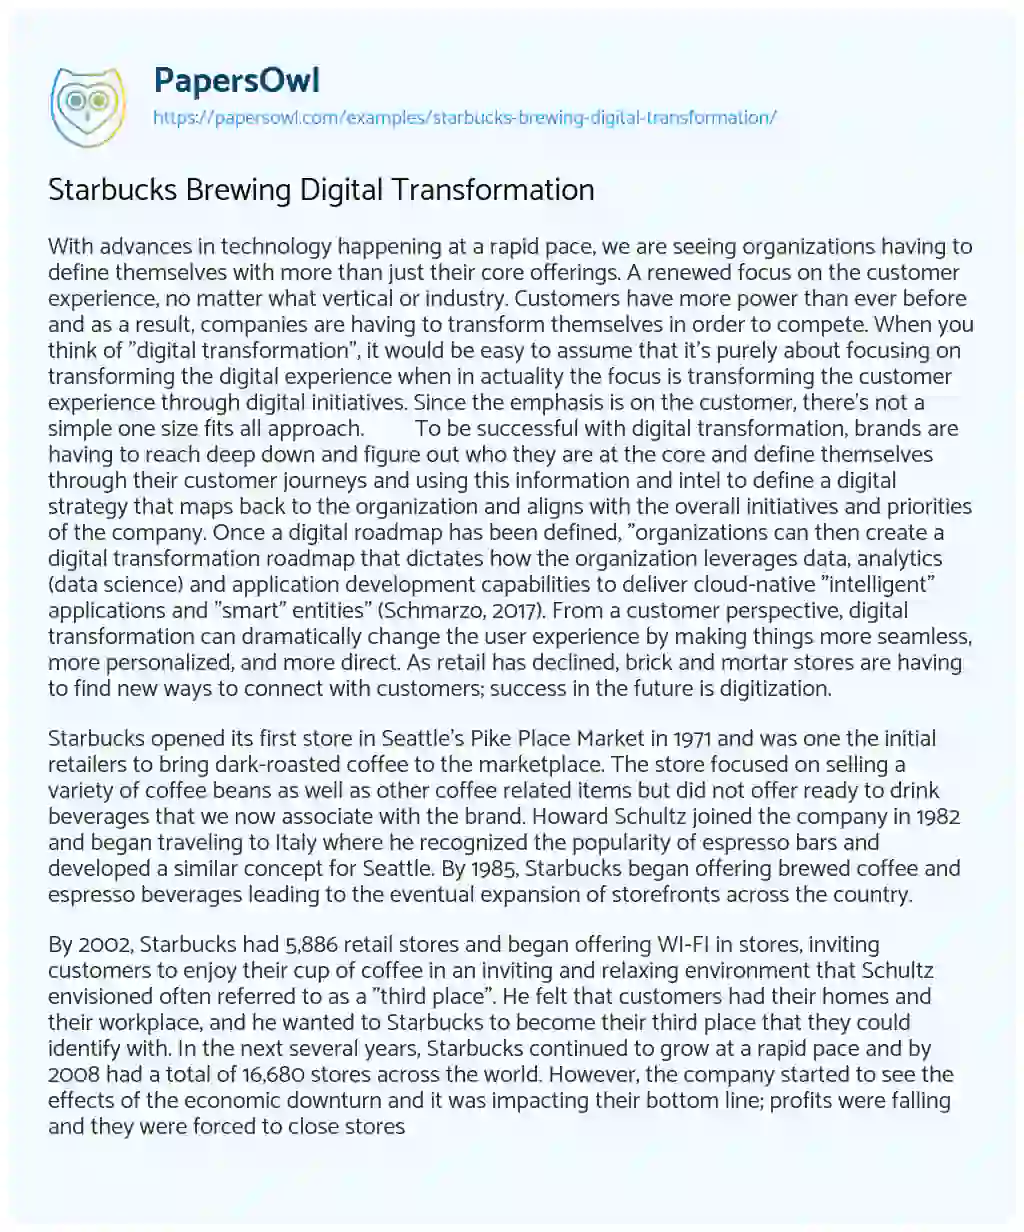 Essay on Starbucks Brewing Digital Transformation